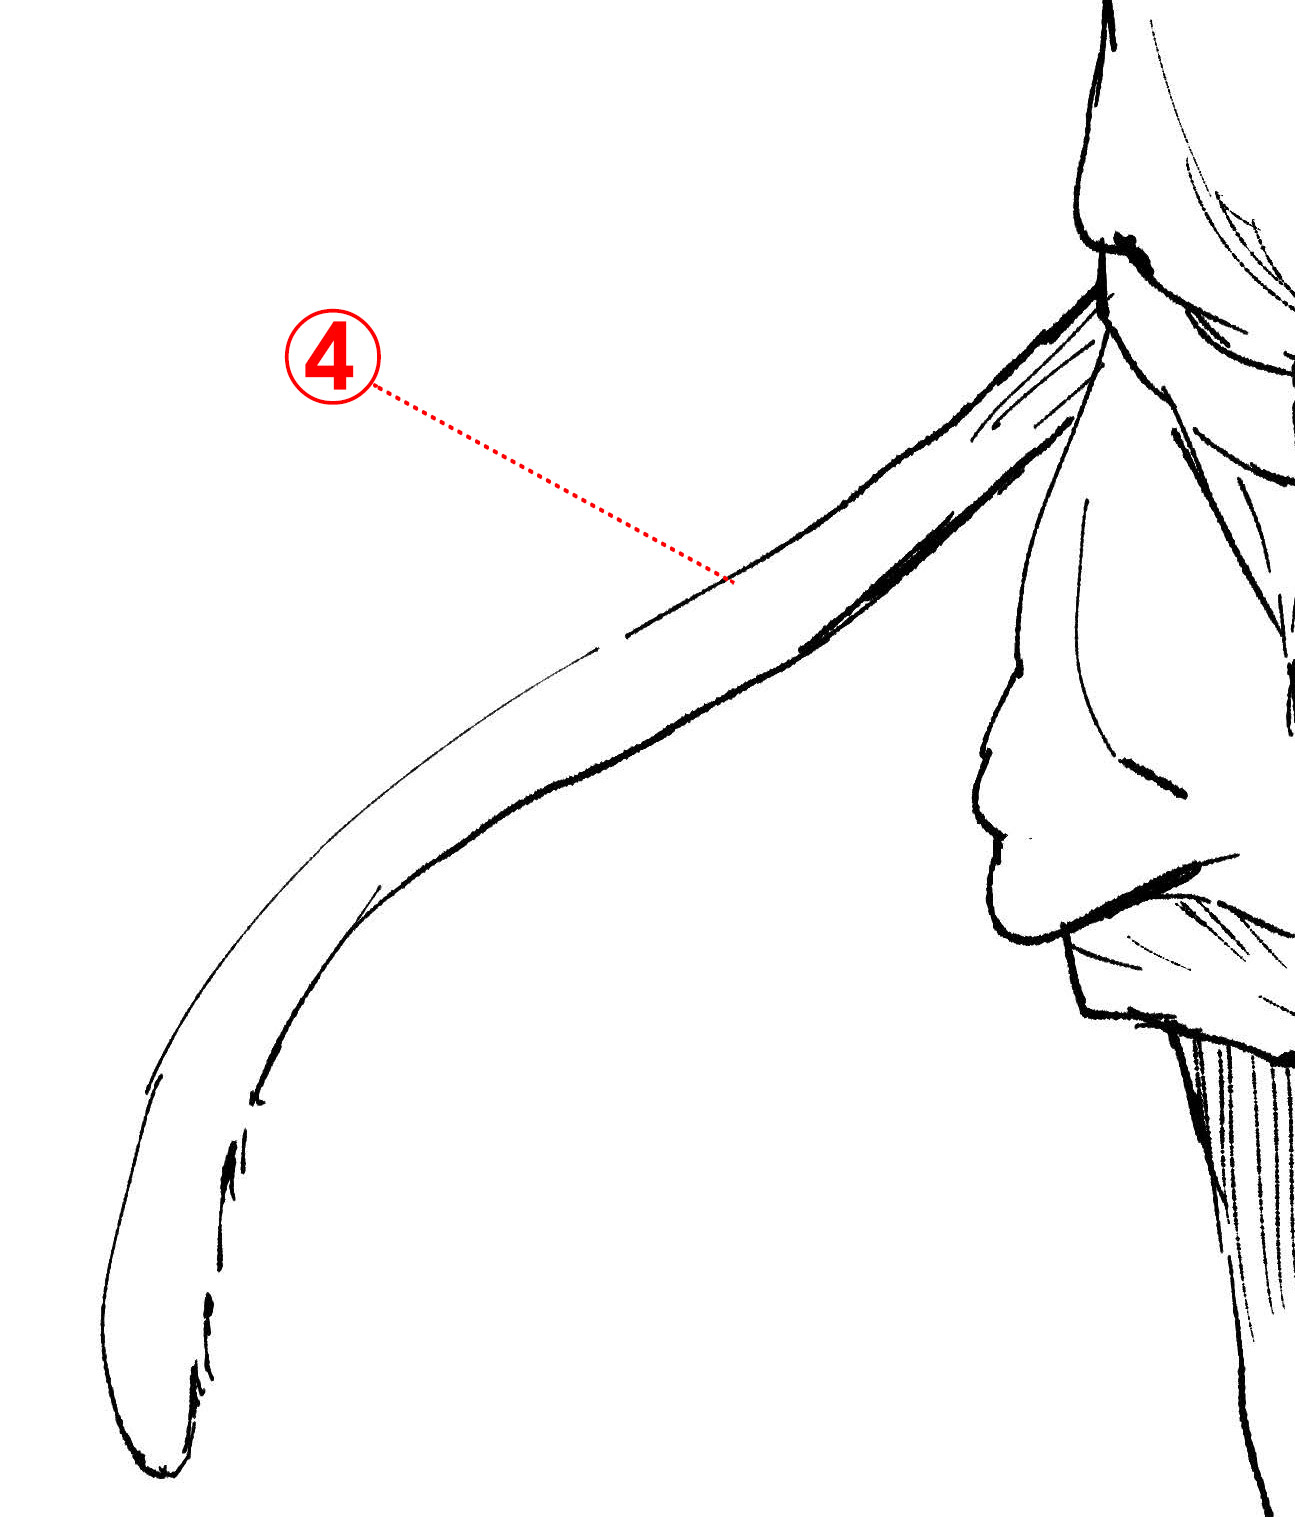 もふもふ1 ネコ耳の描き方とは ケモミミの描き方 第1回 Pictures